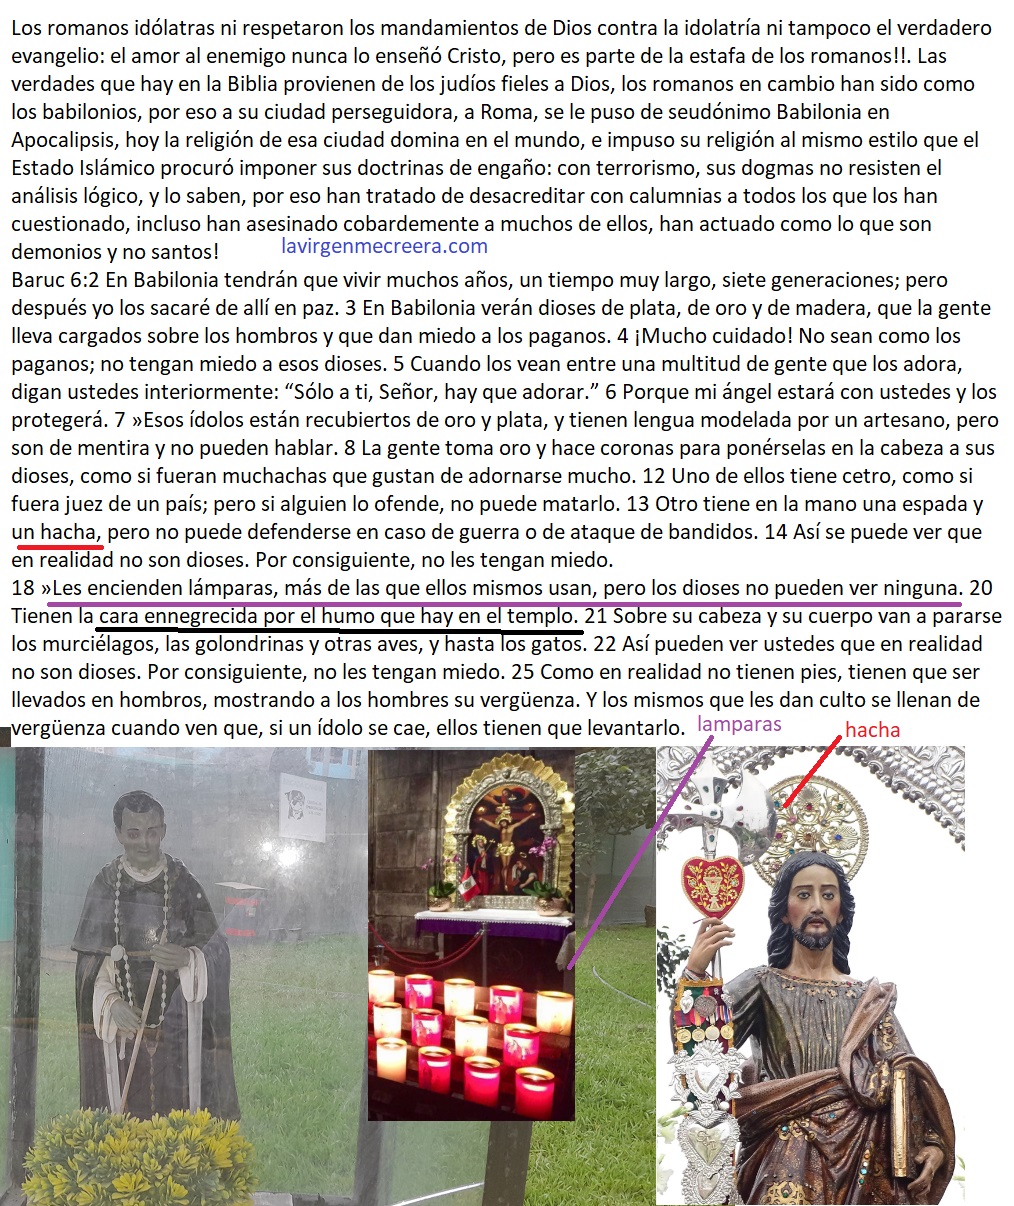 penademuerteya los idolos de Babilonia - Los idolos de Roma